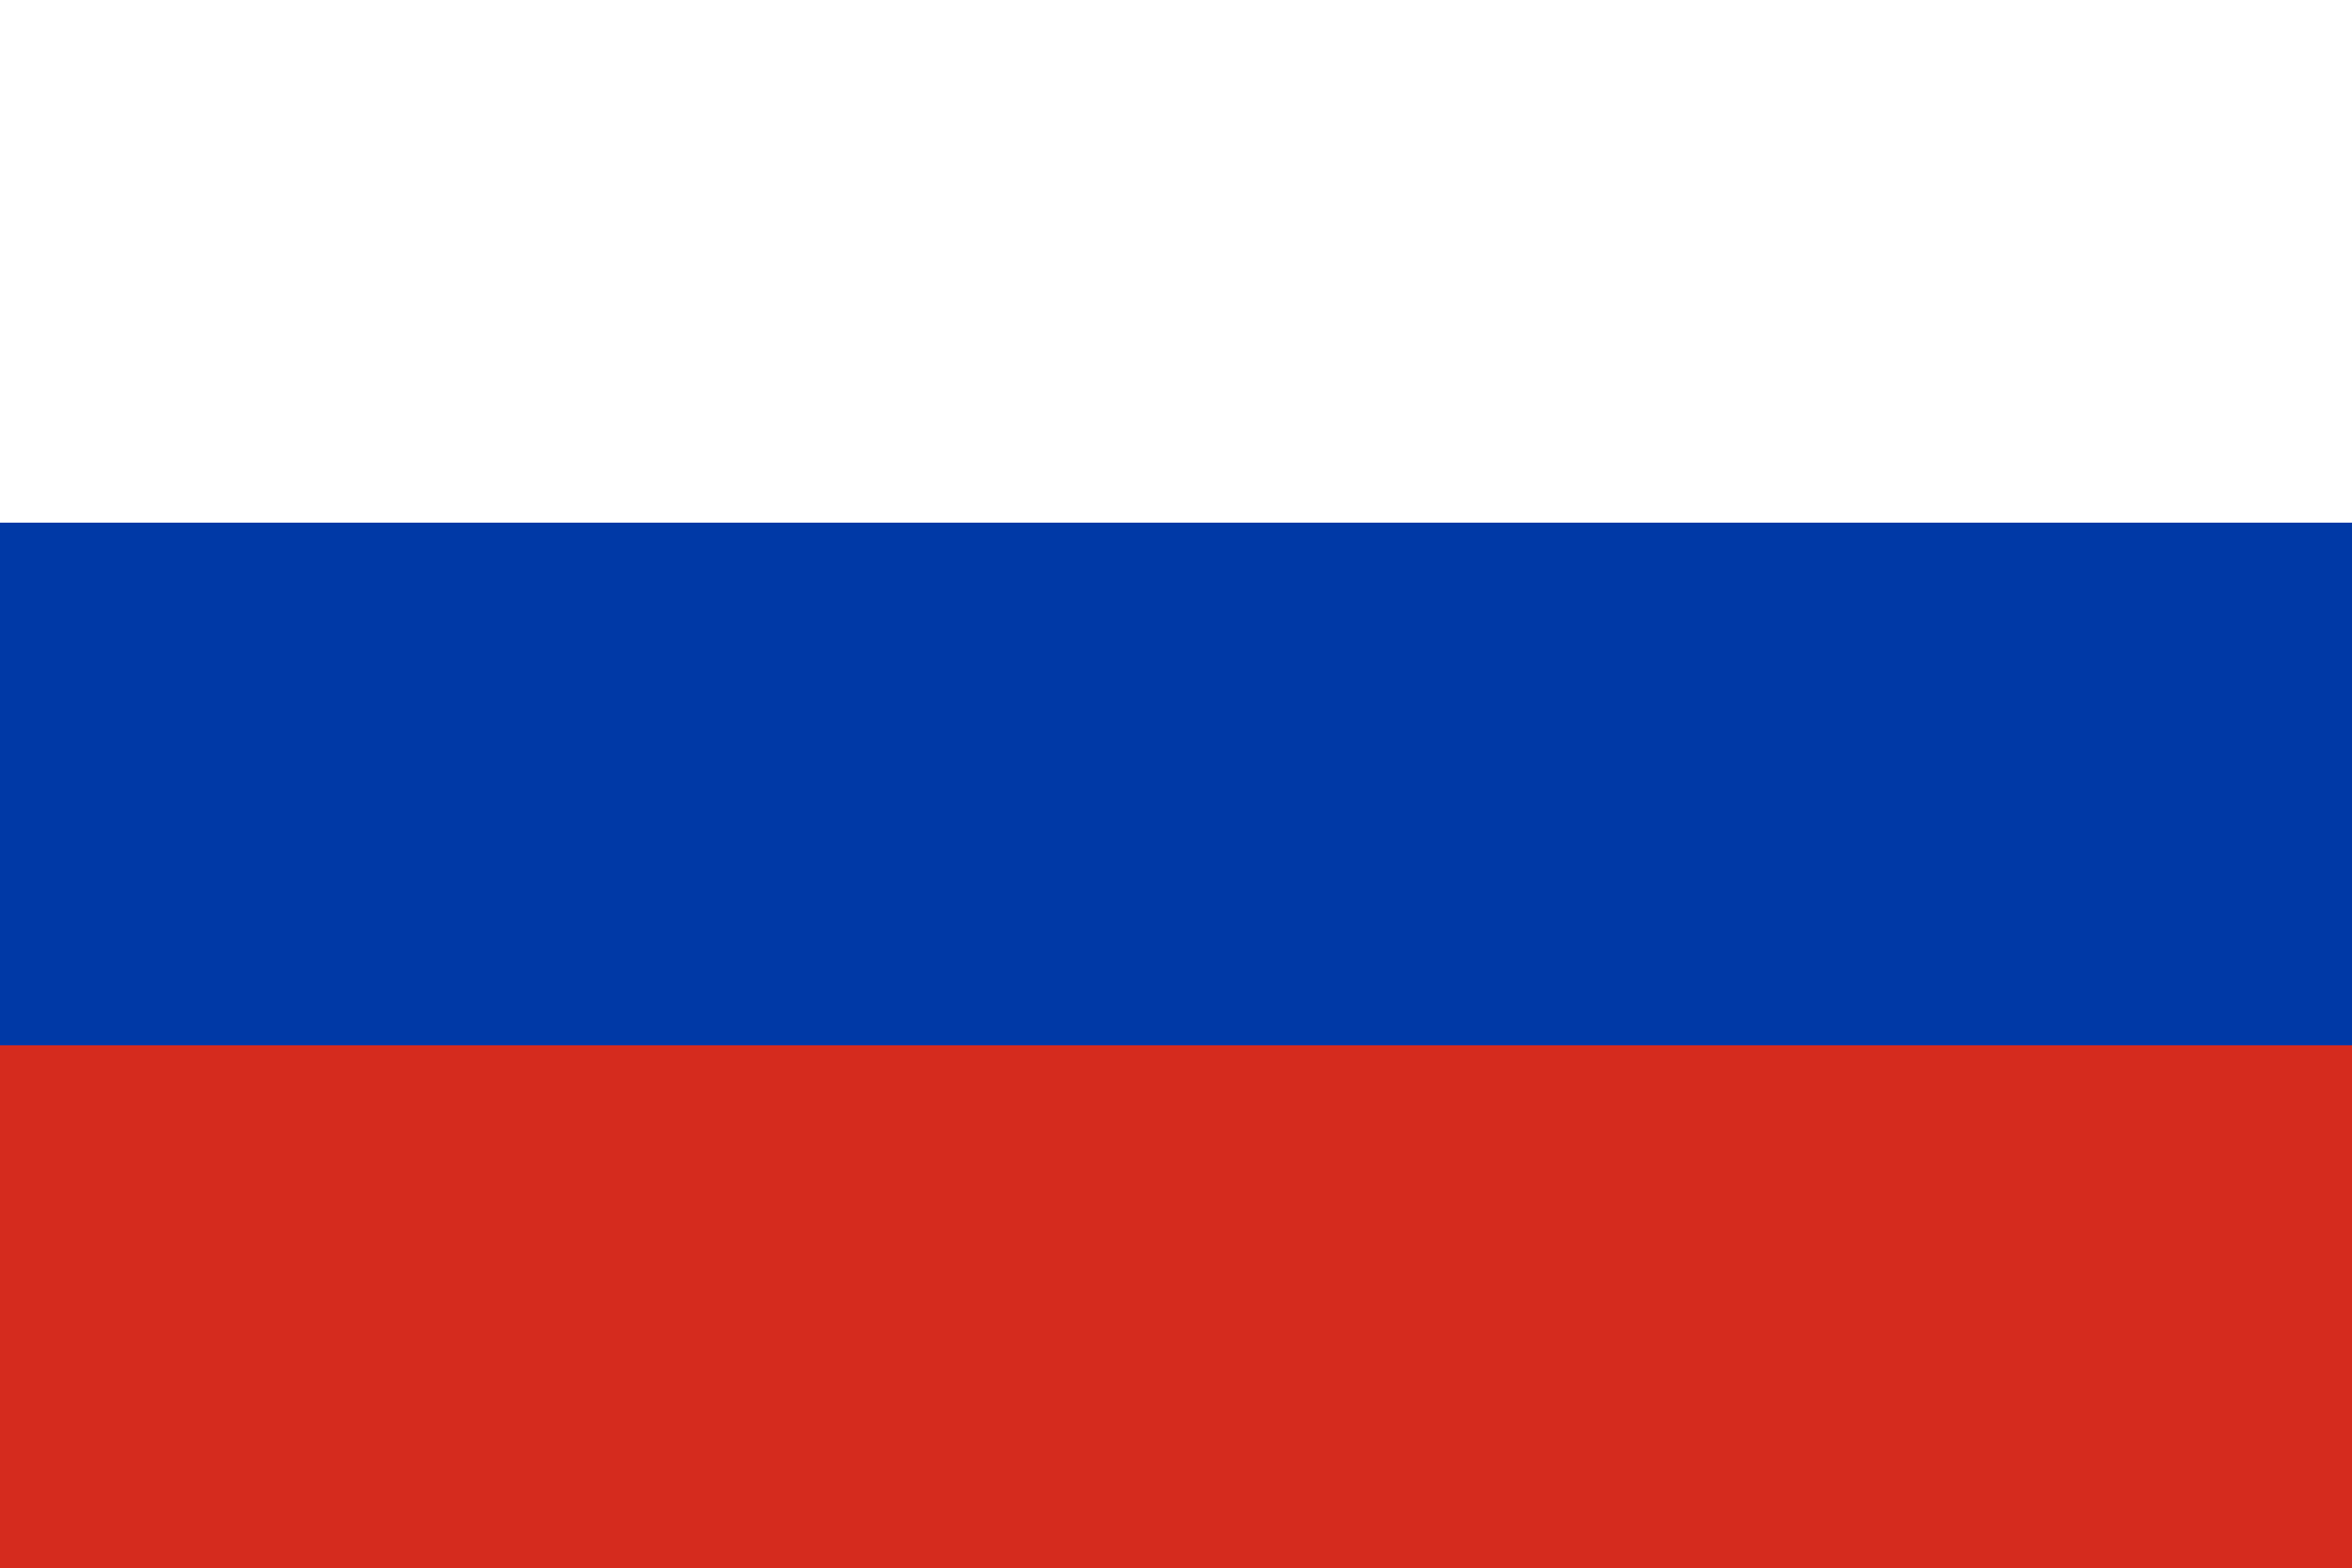 rusca bayrak ile ilgili görsel sonucu